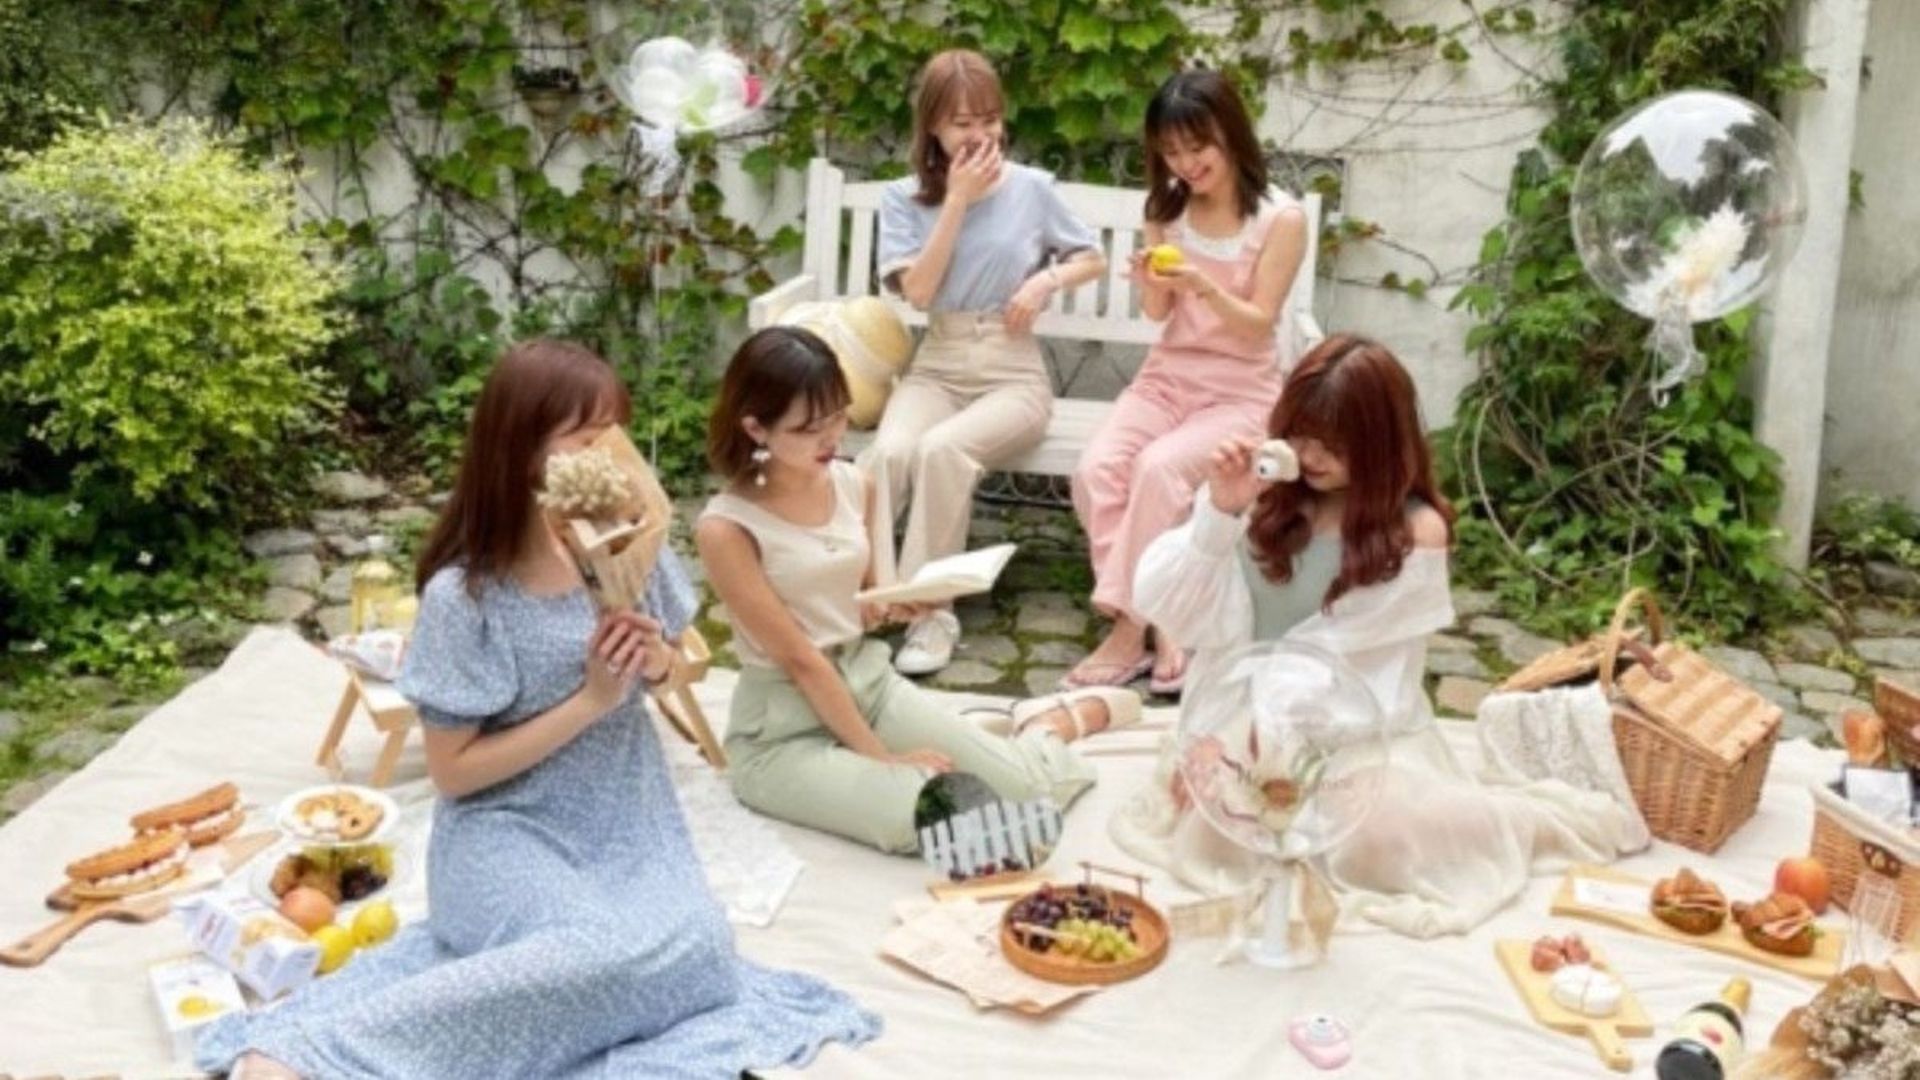 Au Japon, une marque propose une collection pour les femmes de moins de 1m50, enfin !